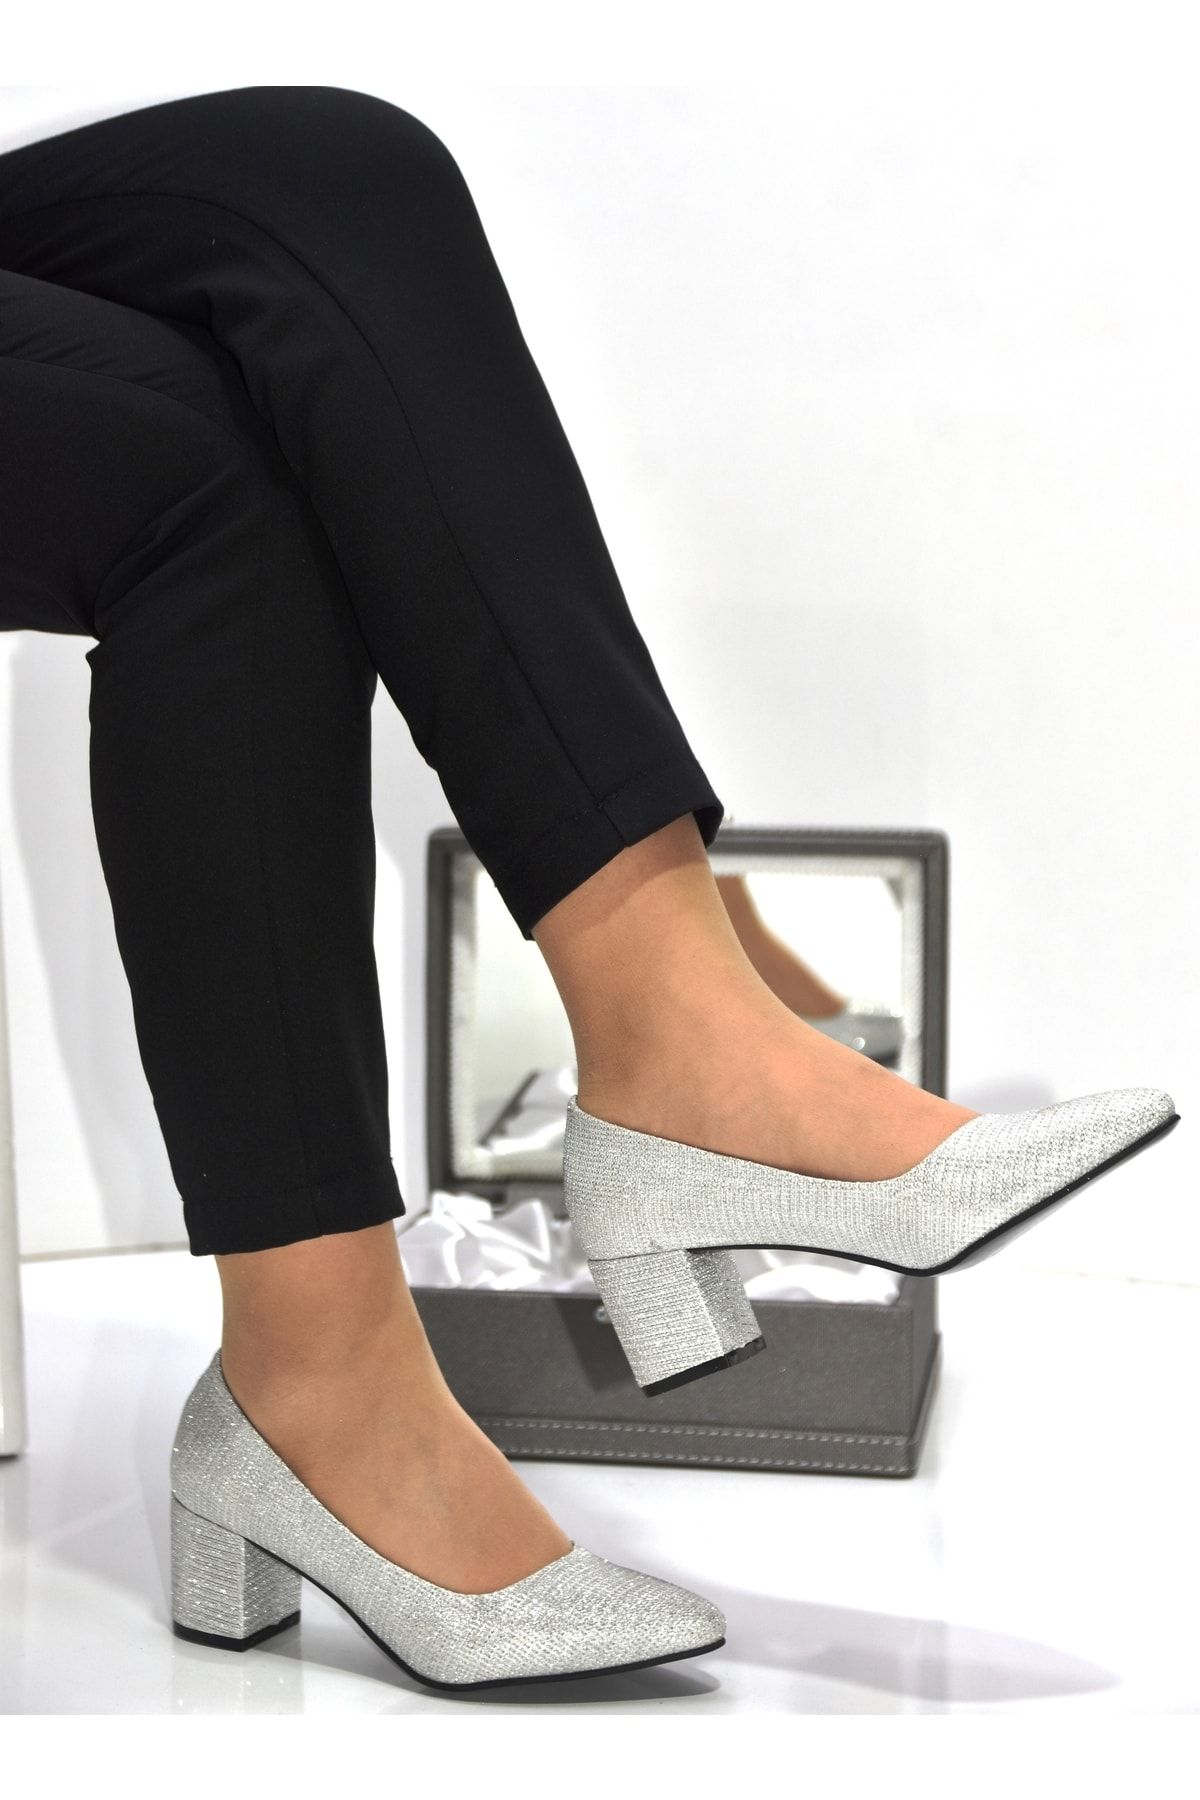 Prego D8871 Topuklu Simli Kadın Ayakkabı Gumüş